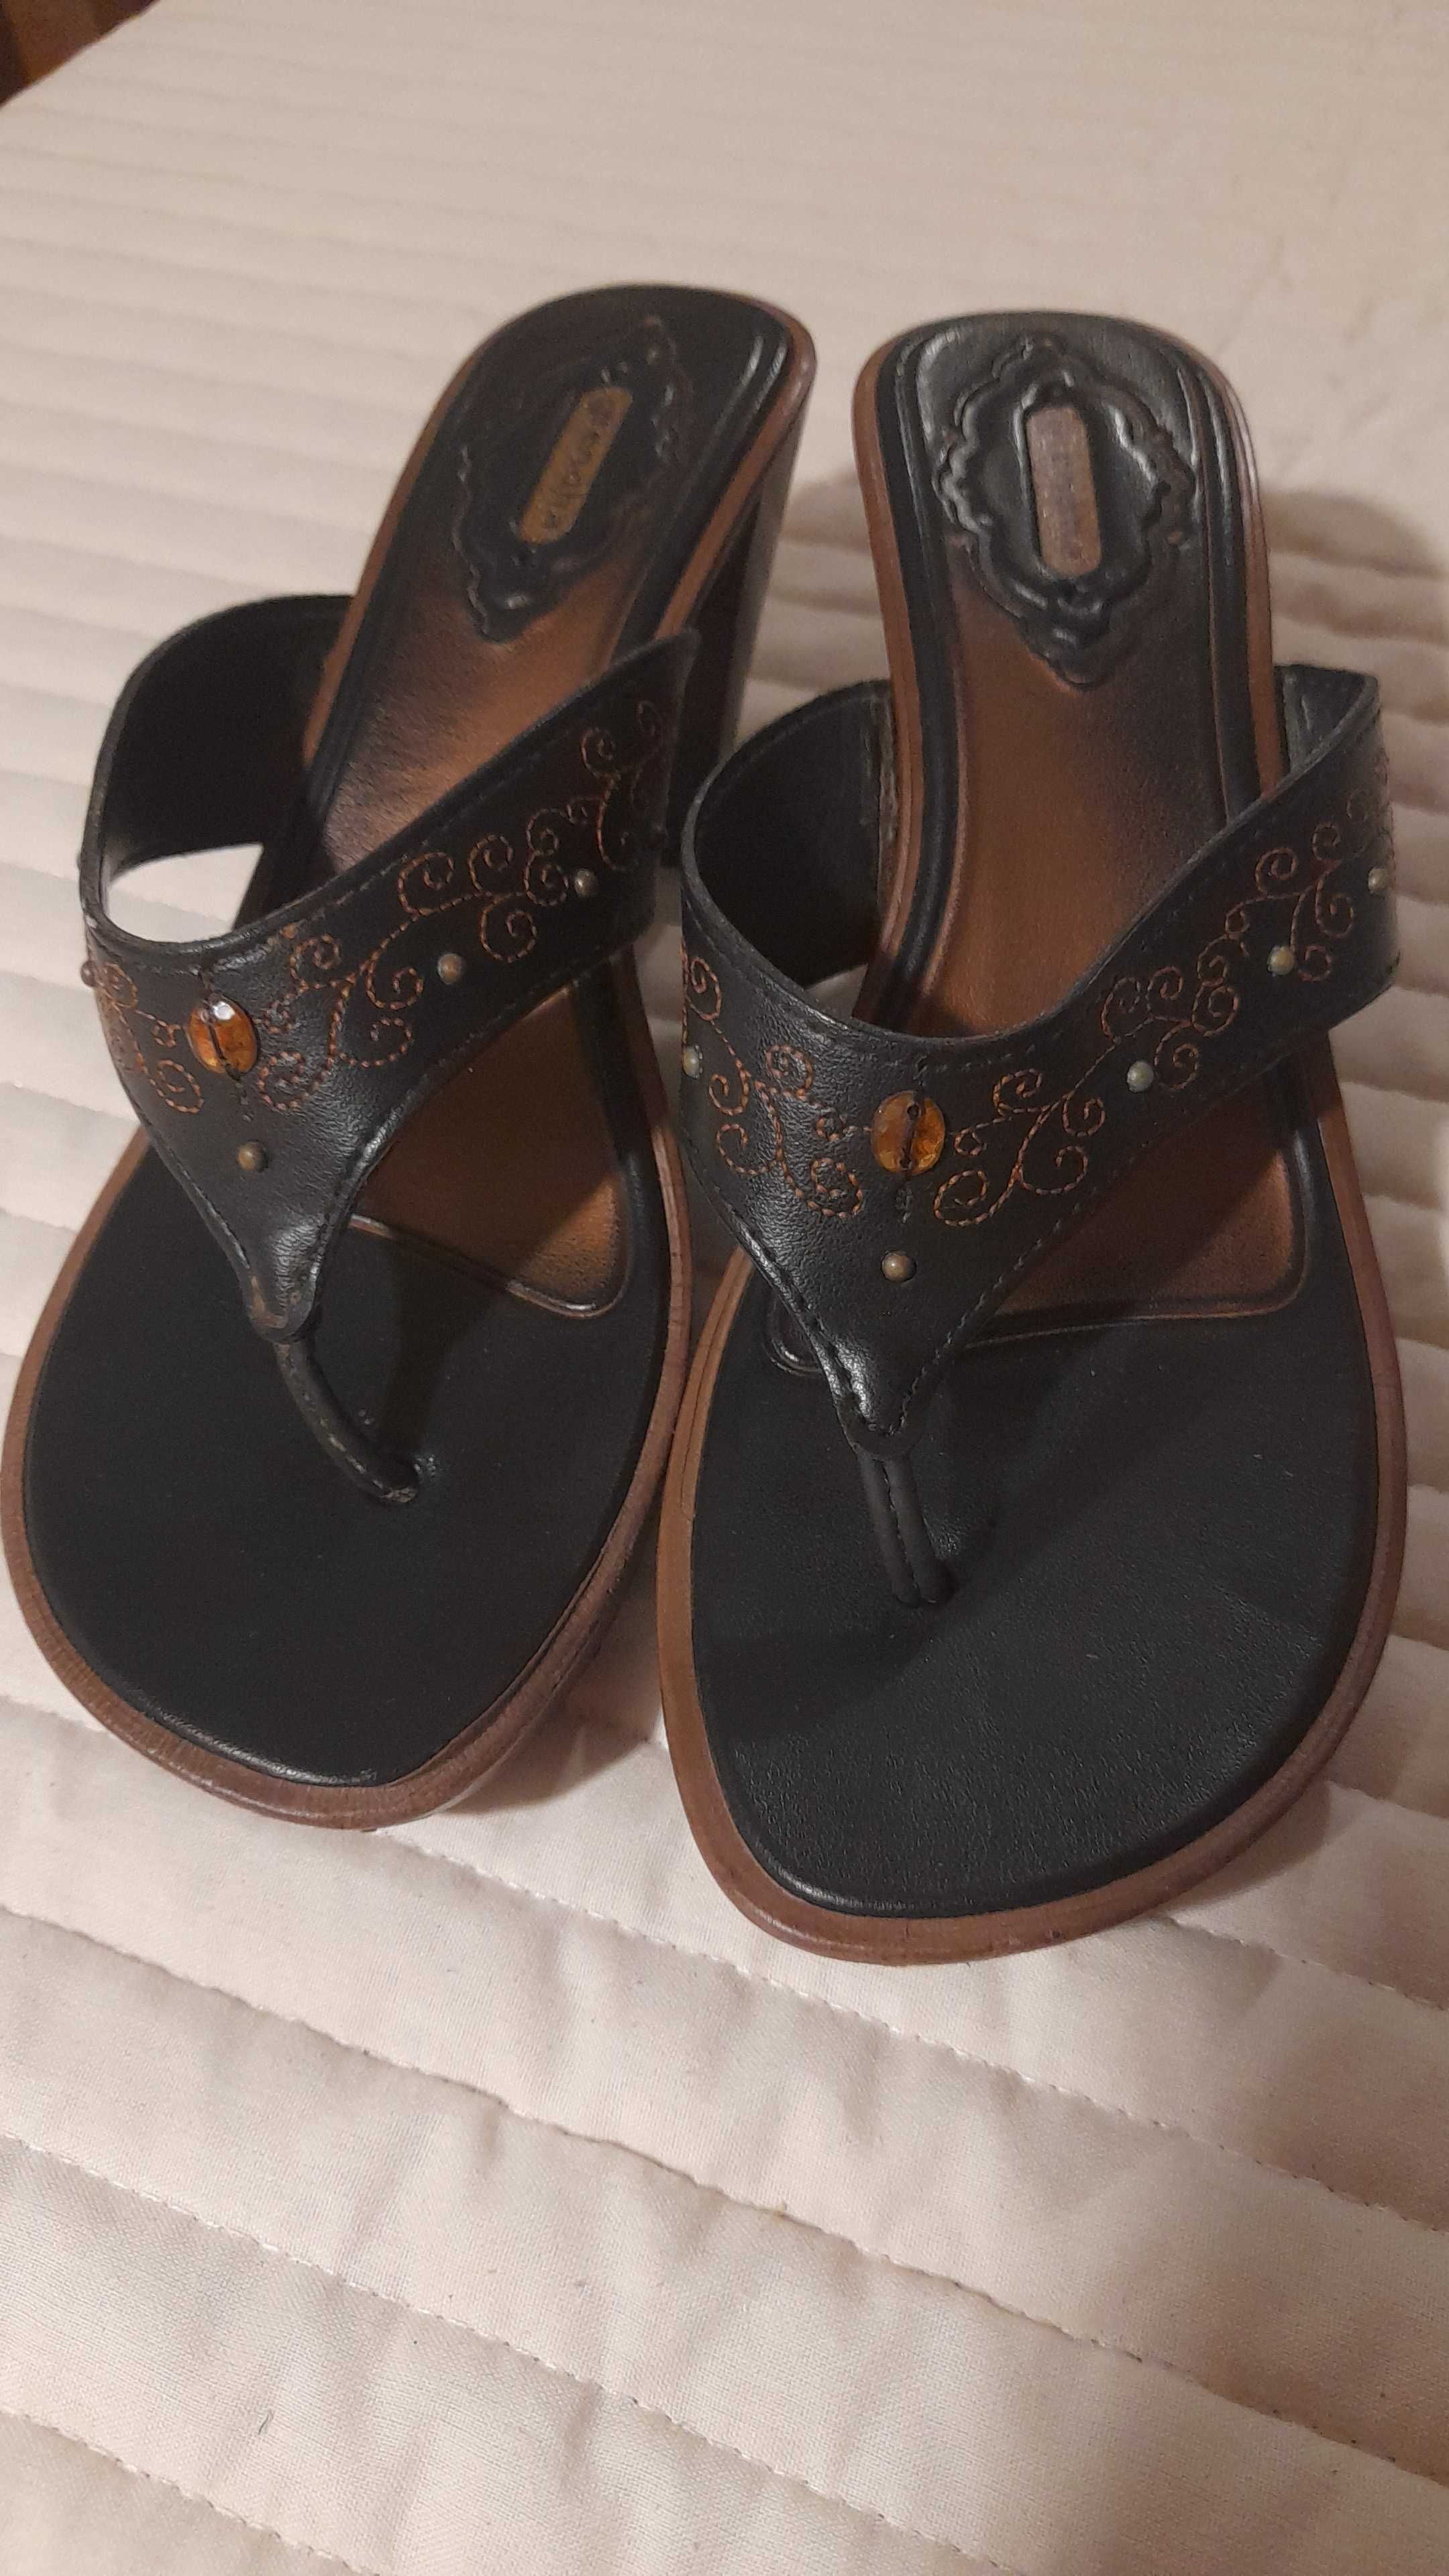 Sandálias Grendha, cor preto e castanho, tamanho 40